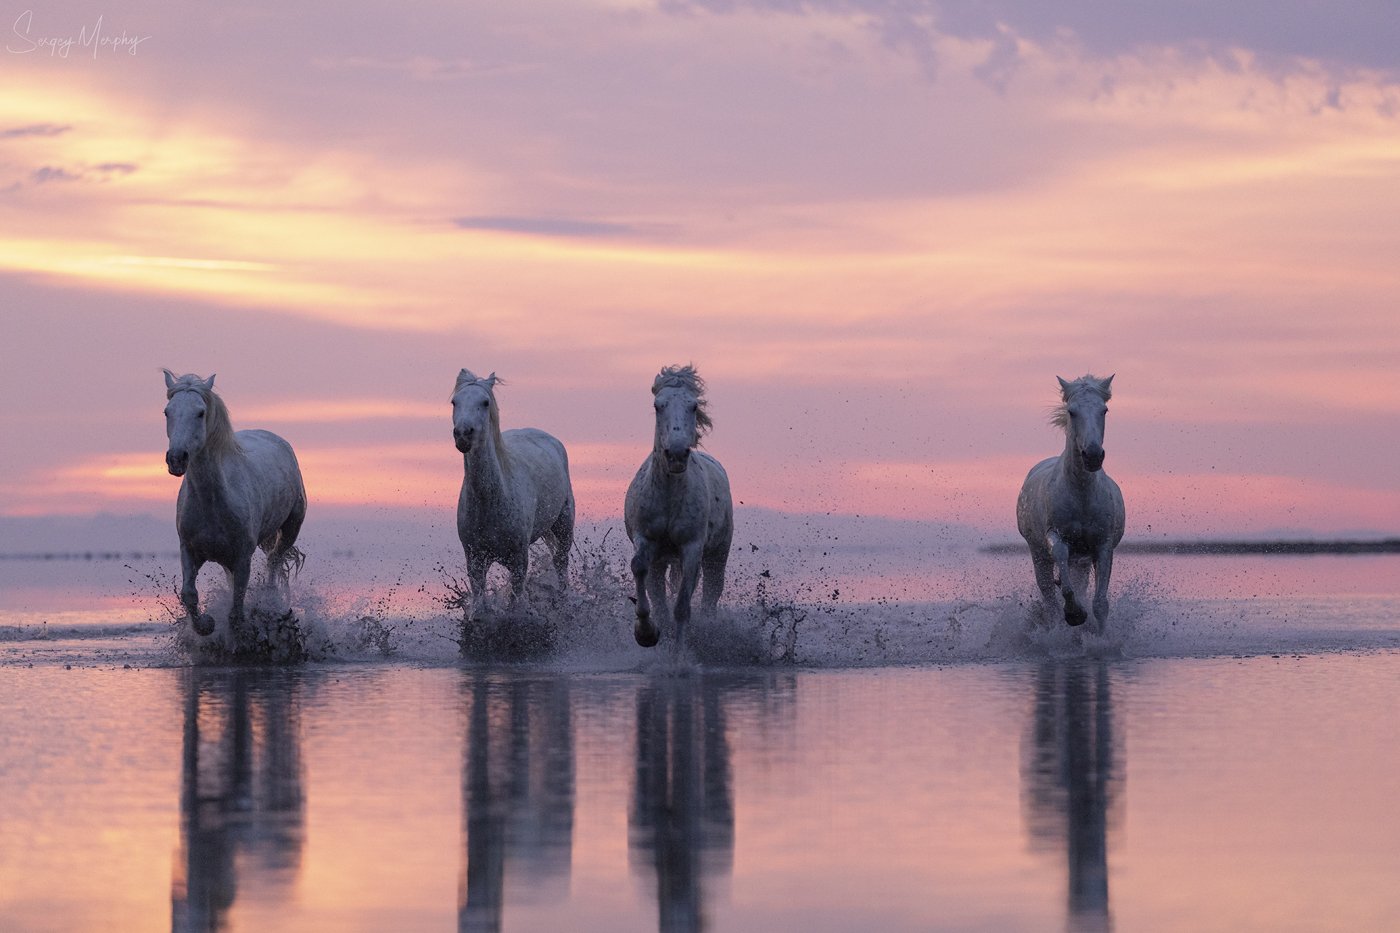 camargue horses sunrise, Sergey Merphy